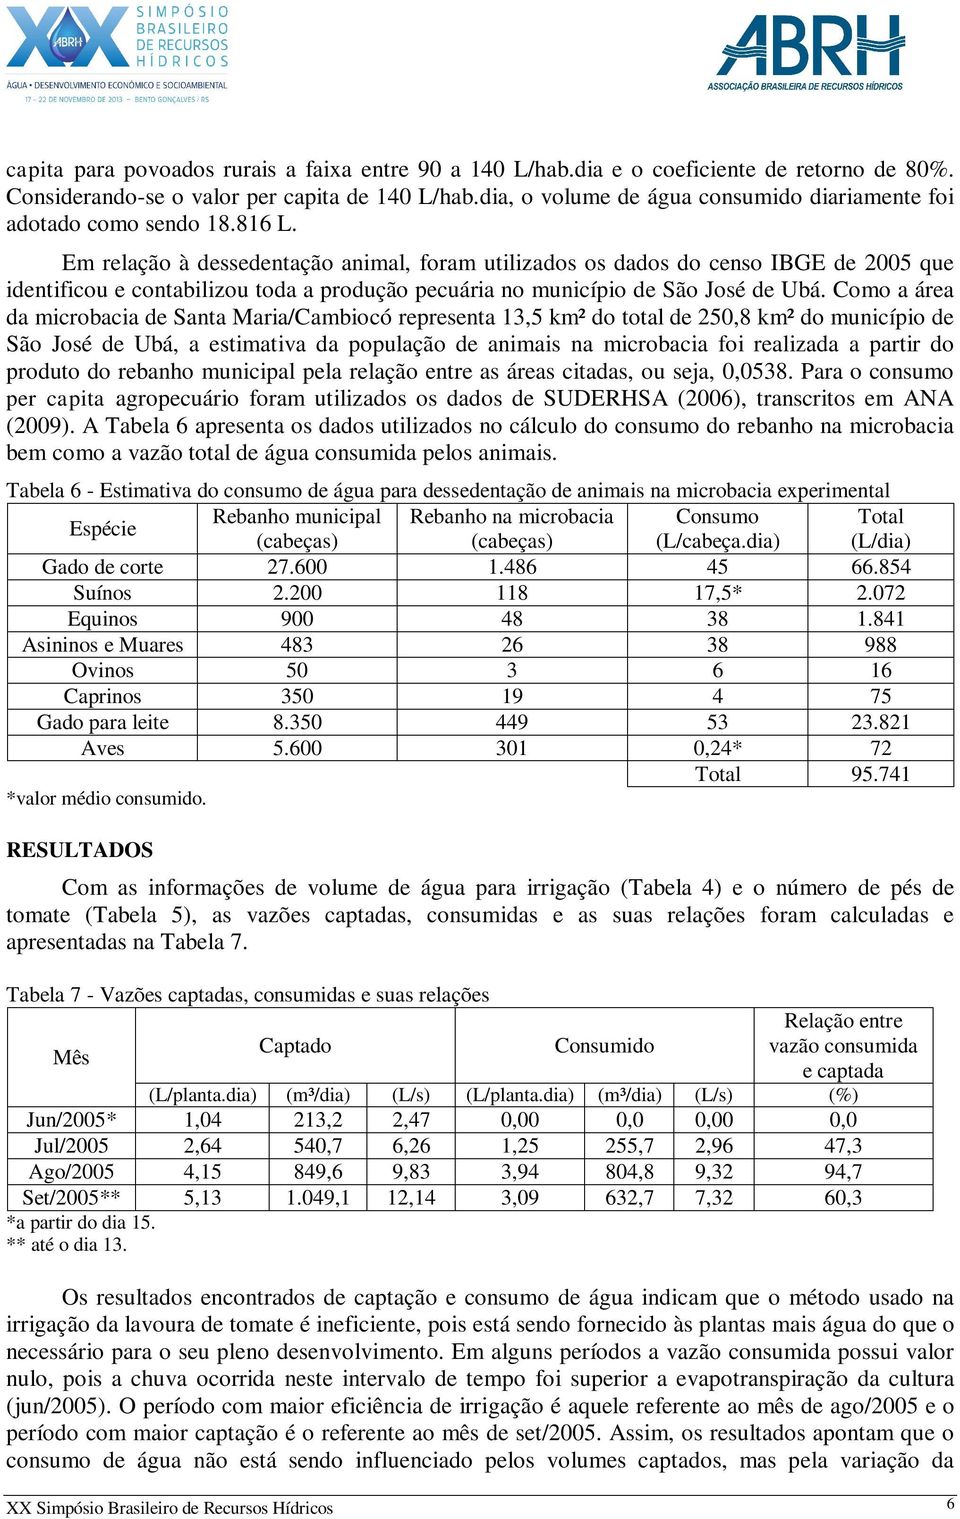 Em relação à dessedentação animal, foram utilizados os dados do censo IBGE de 2005 que identificou e contabilizou toda a produção pecuária no município de São José de Ubá.